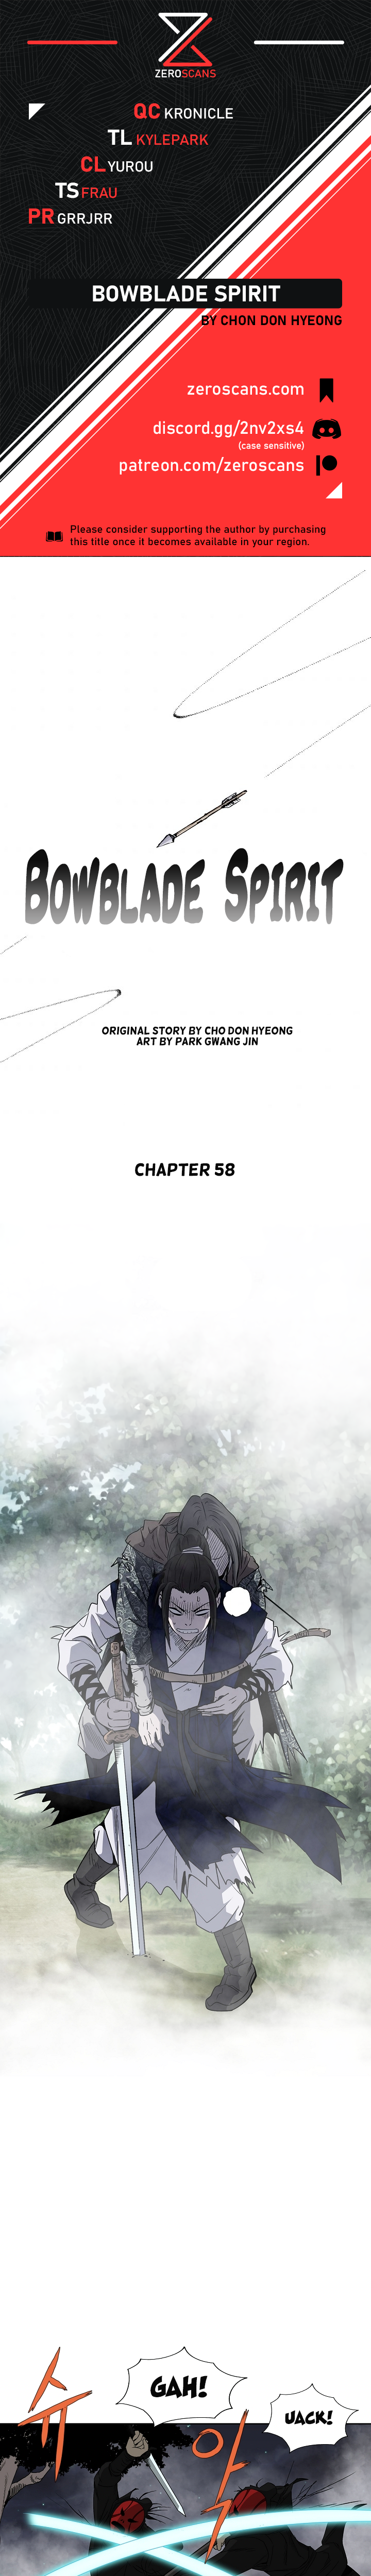 Bowblade Spirit - Chapter 3746 - Image 1